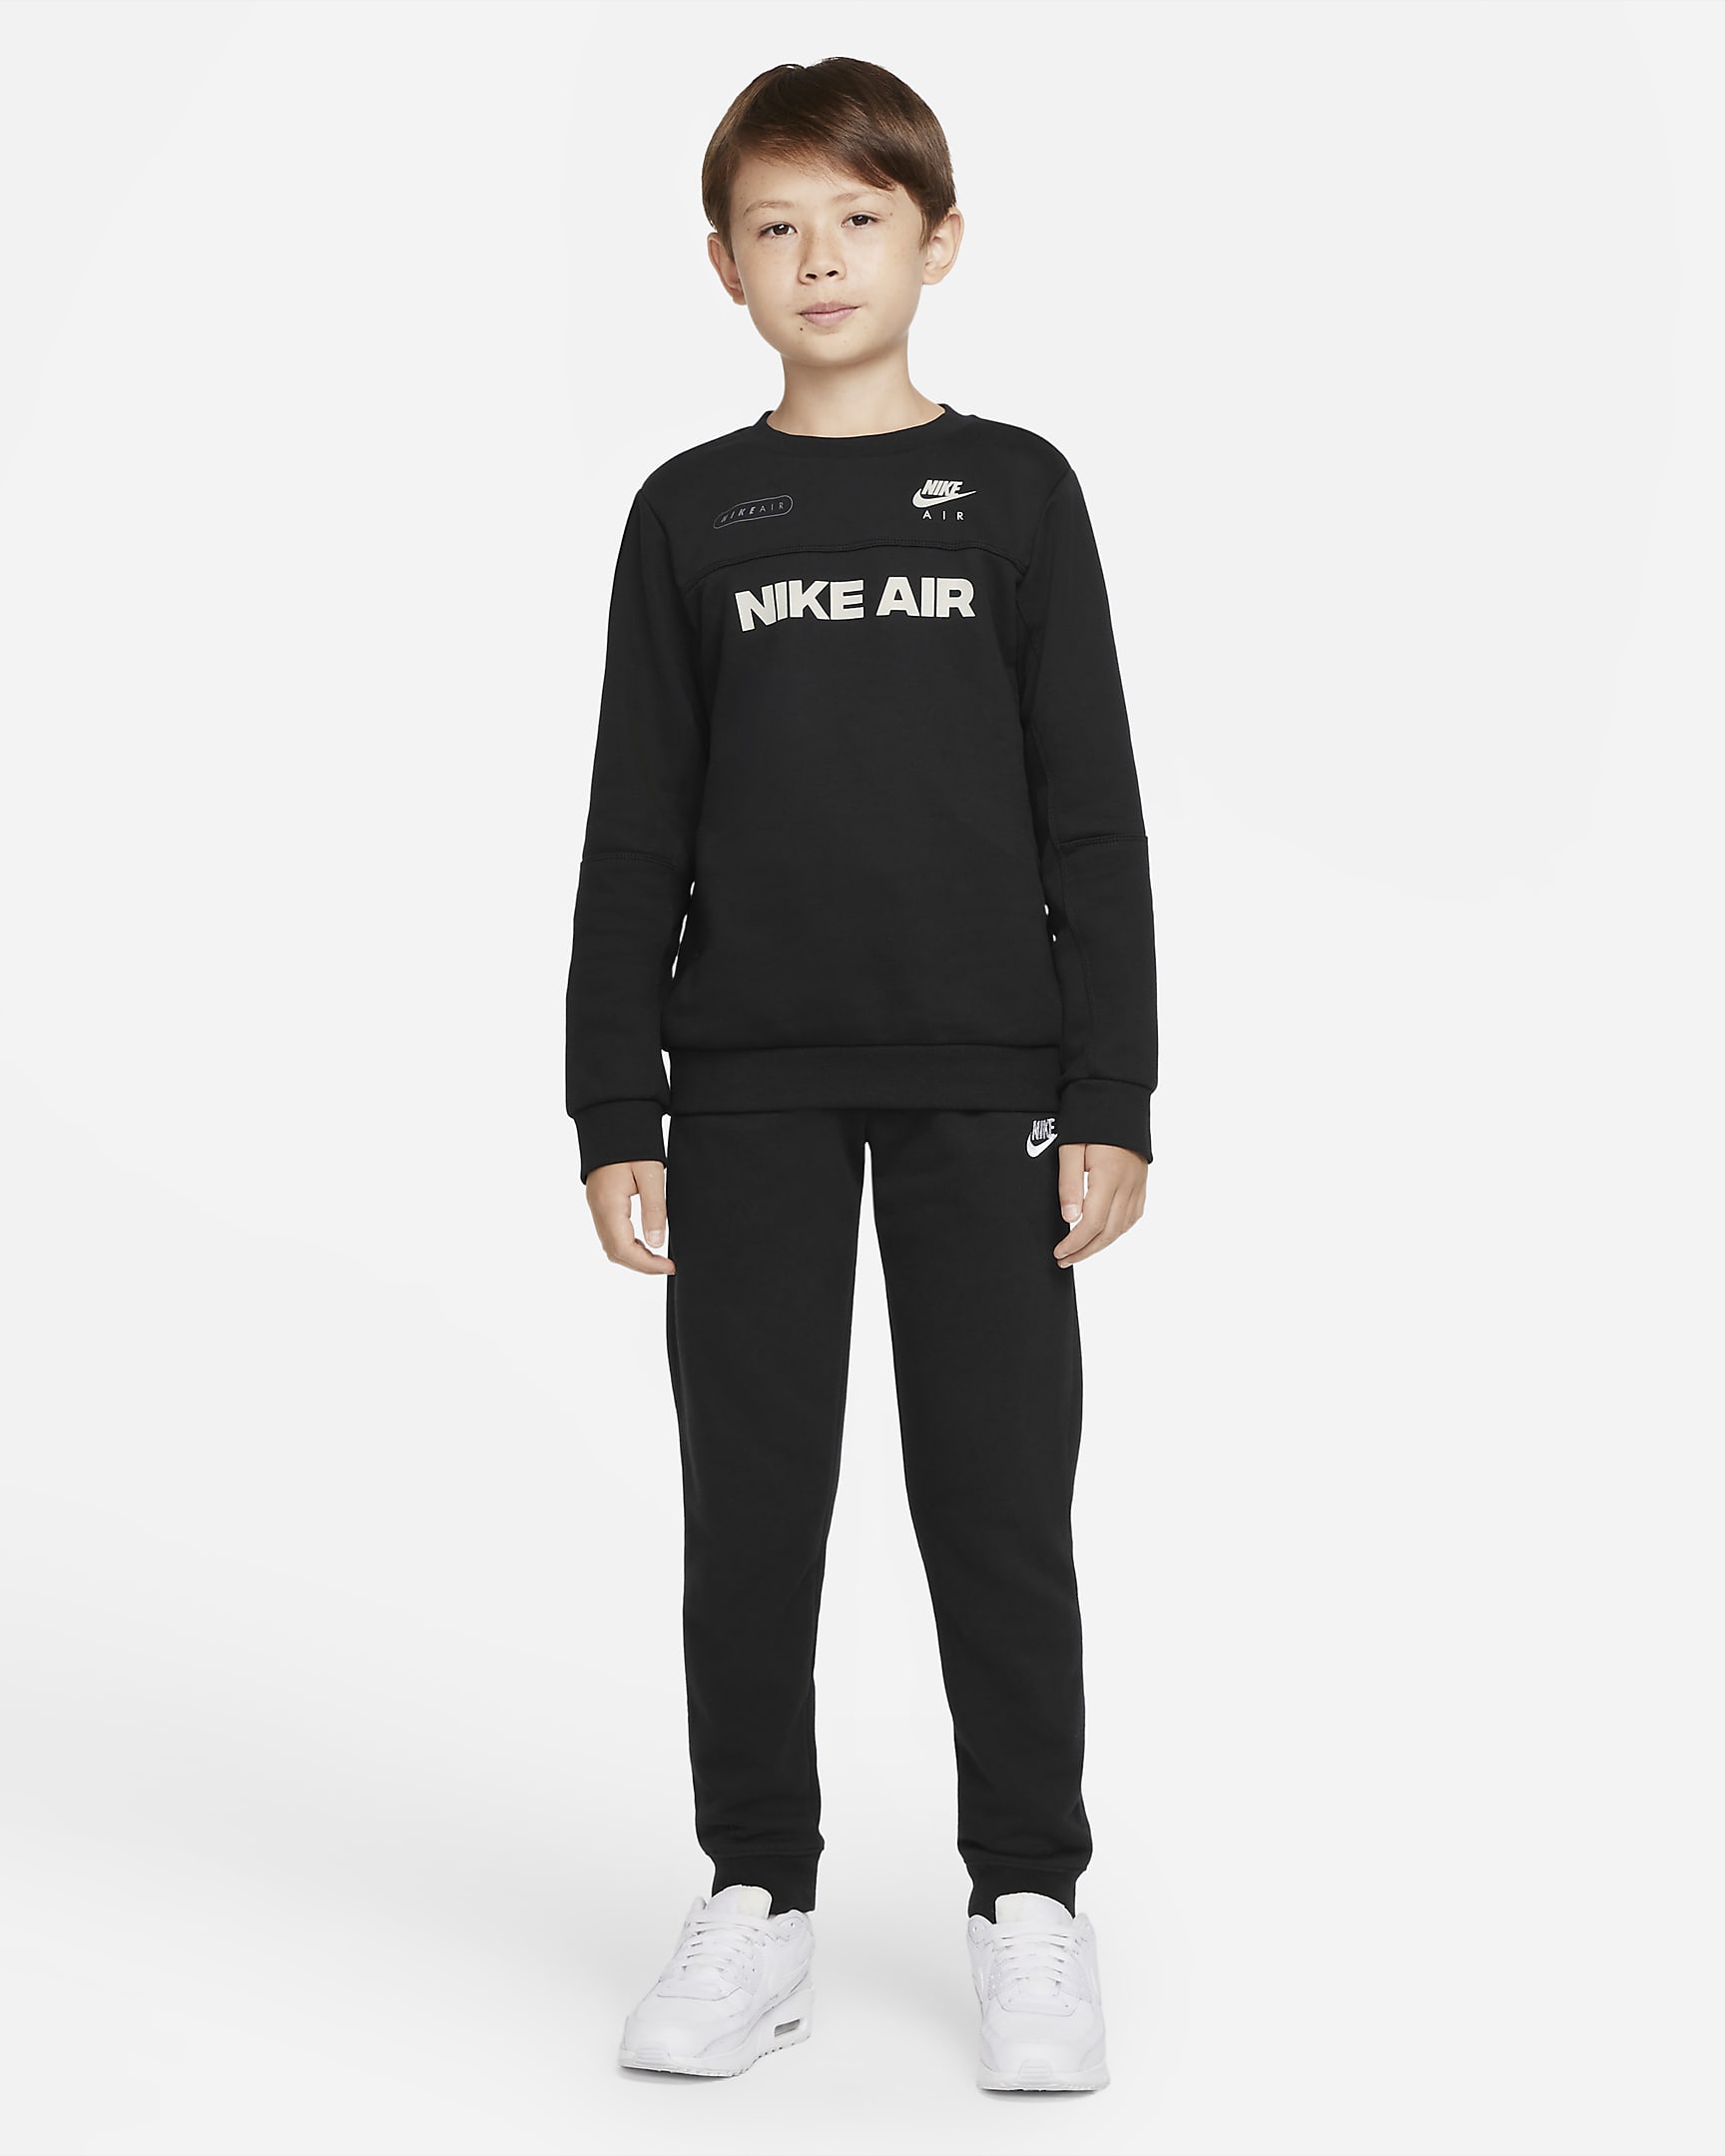 Nike Air Older Kids' (Boys') Crew Sweatshirt. Nike IN